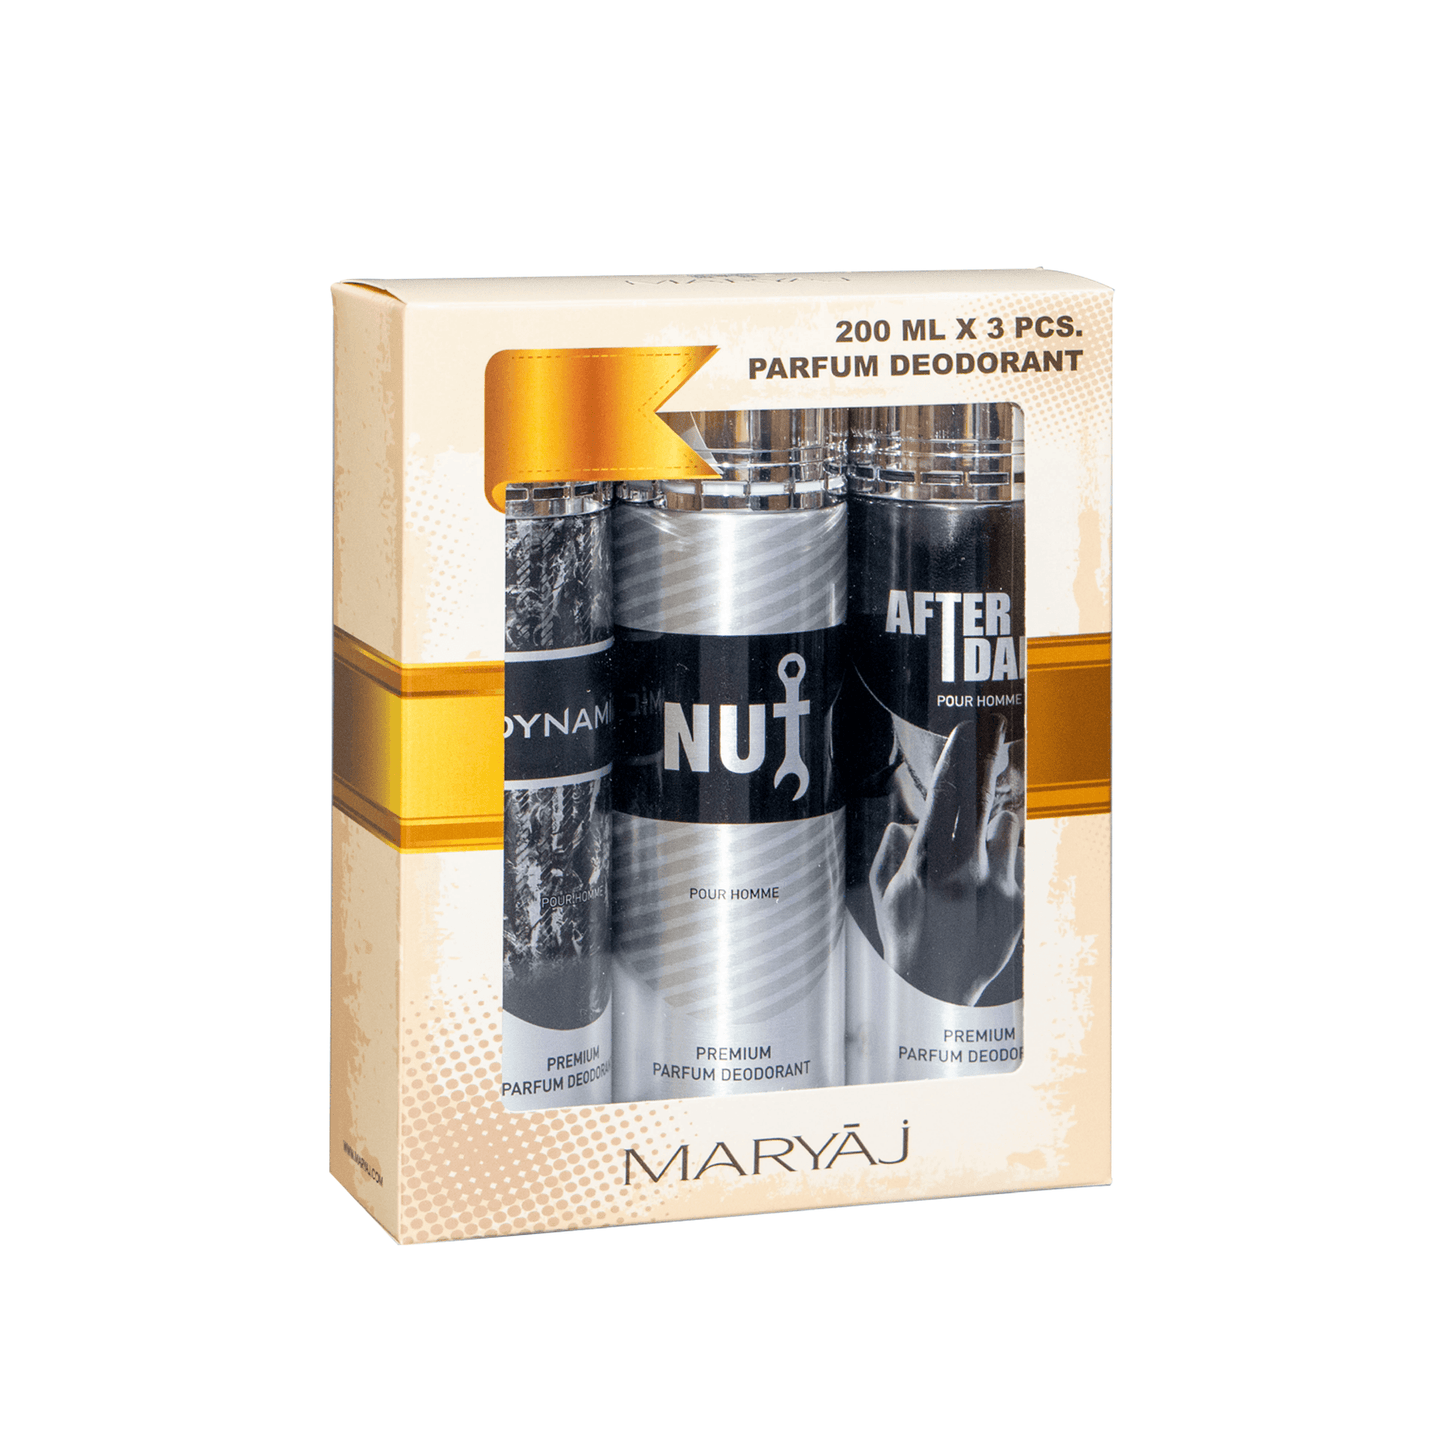 FRENCHLINE Deodorant Body Spray For Men, Pack of 3, (200ml Each)